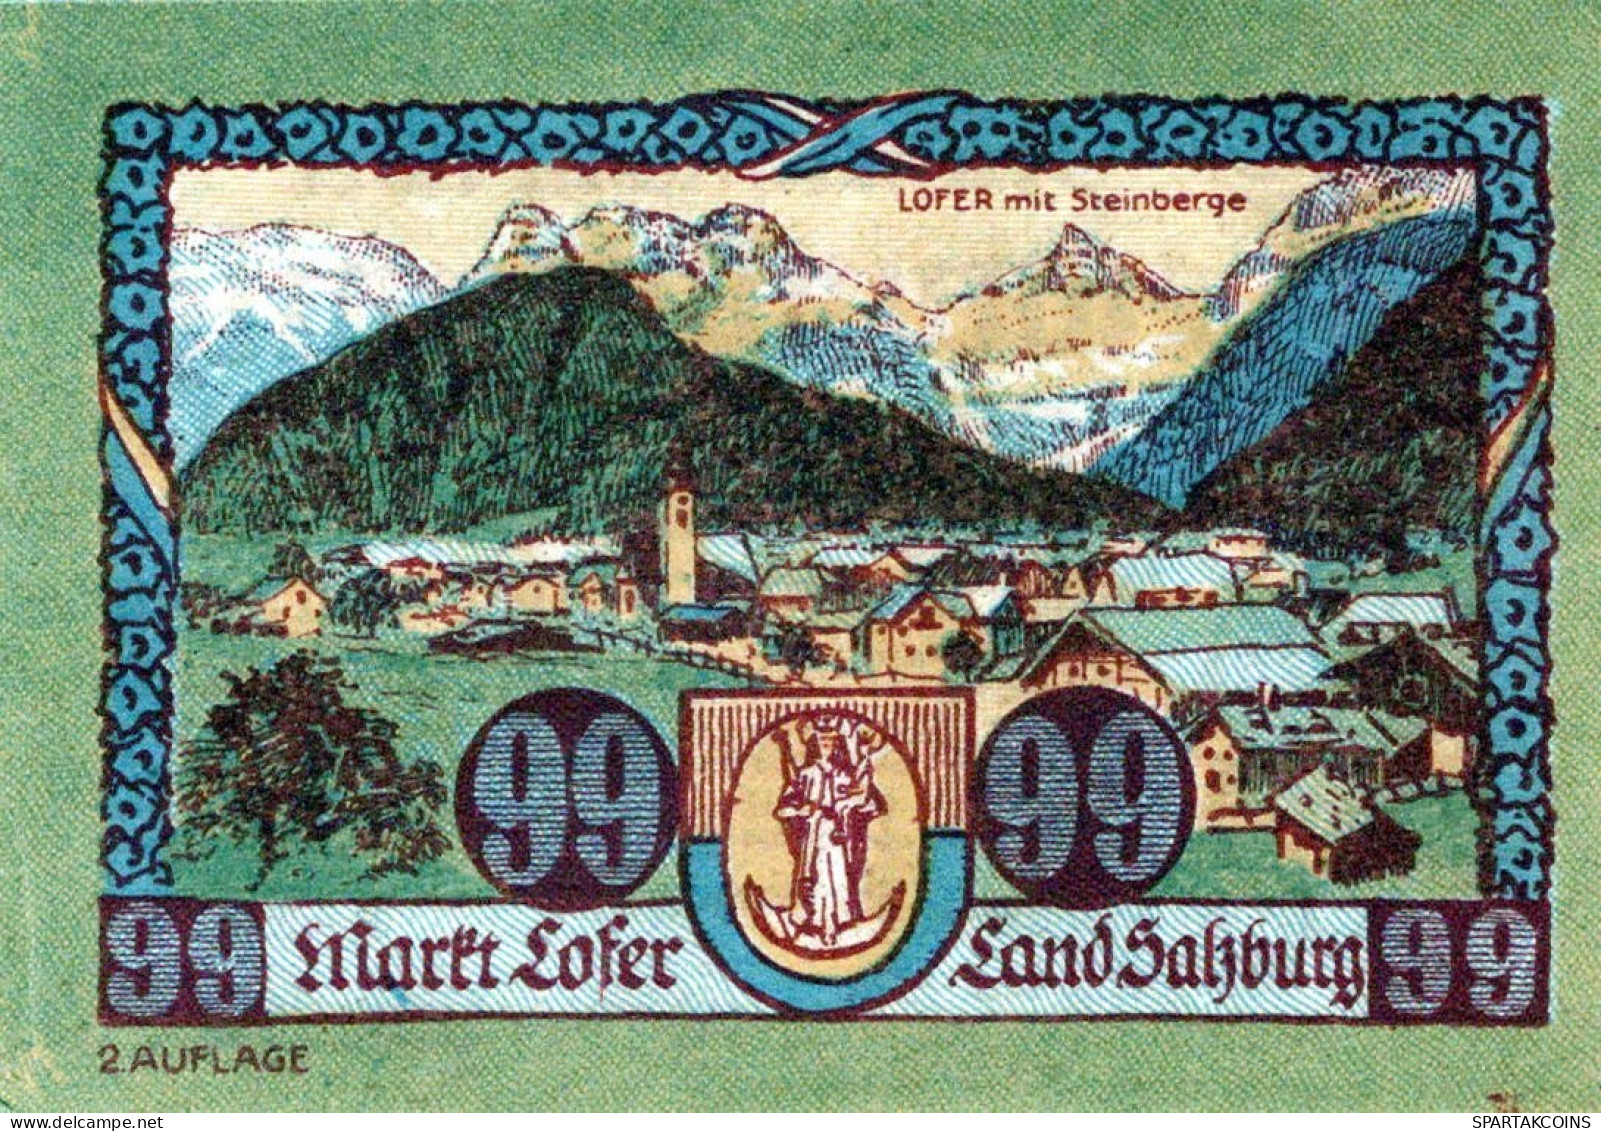 99 HELLER 1918-1921 Stadt LOFER Salzburg Österreich Notgeld Banknote #PD793 - [11] Local Banknote Issues